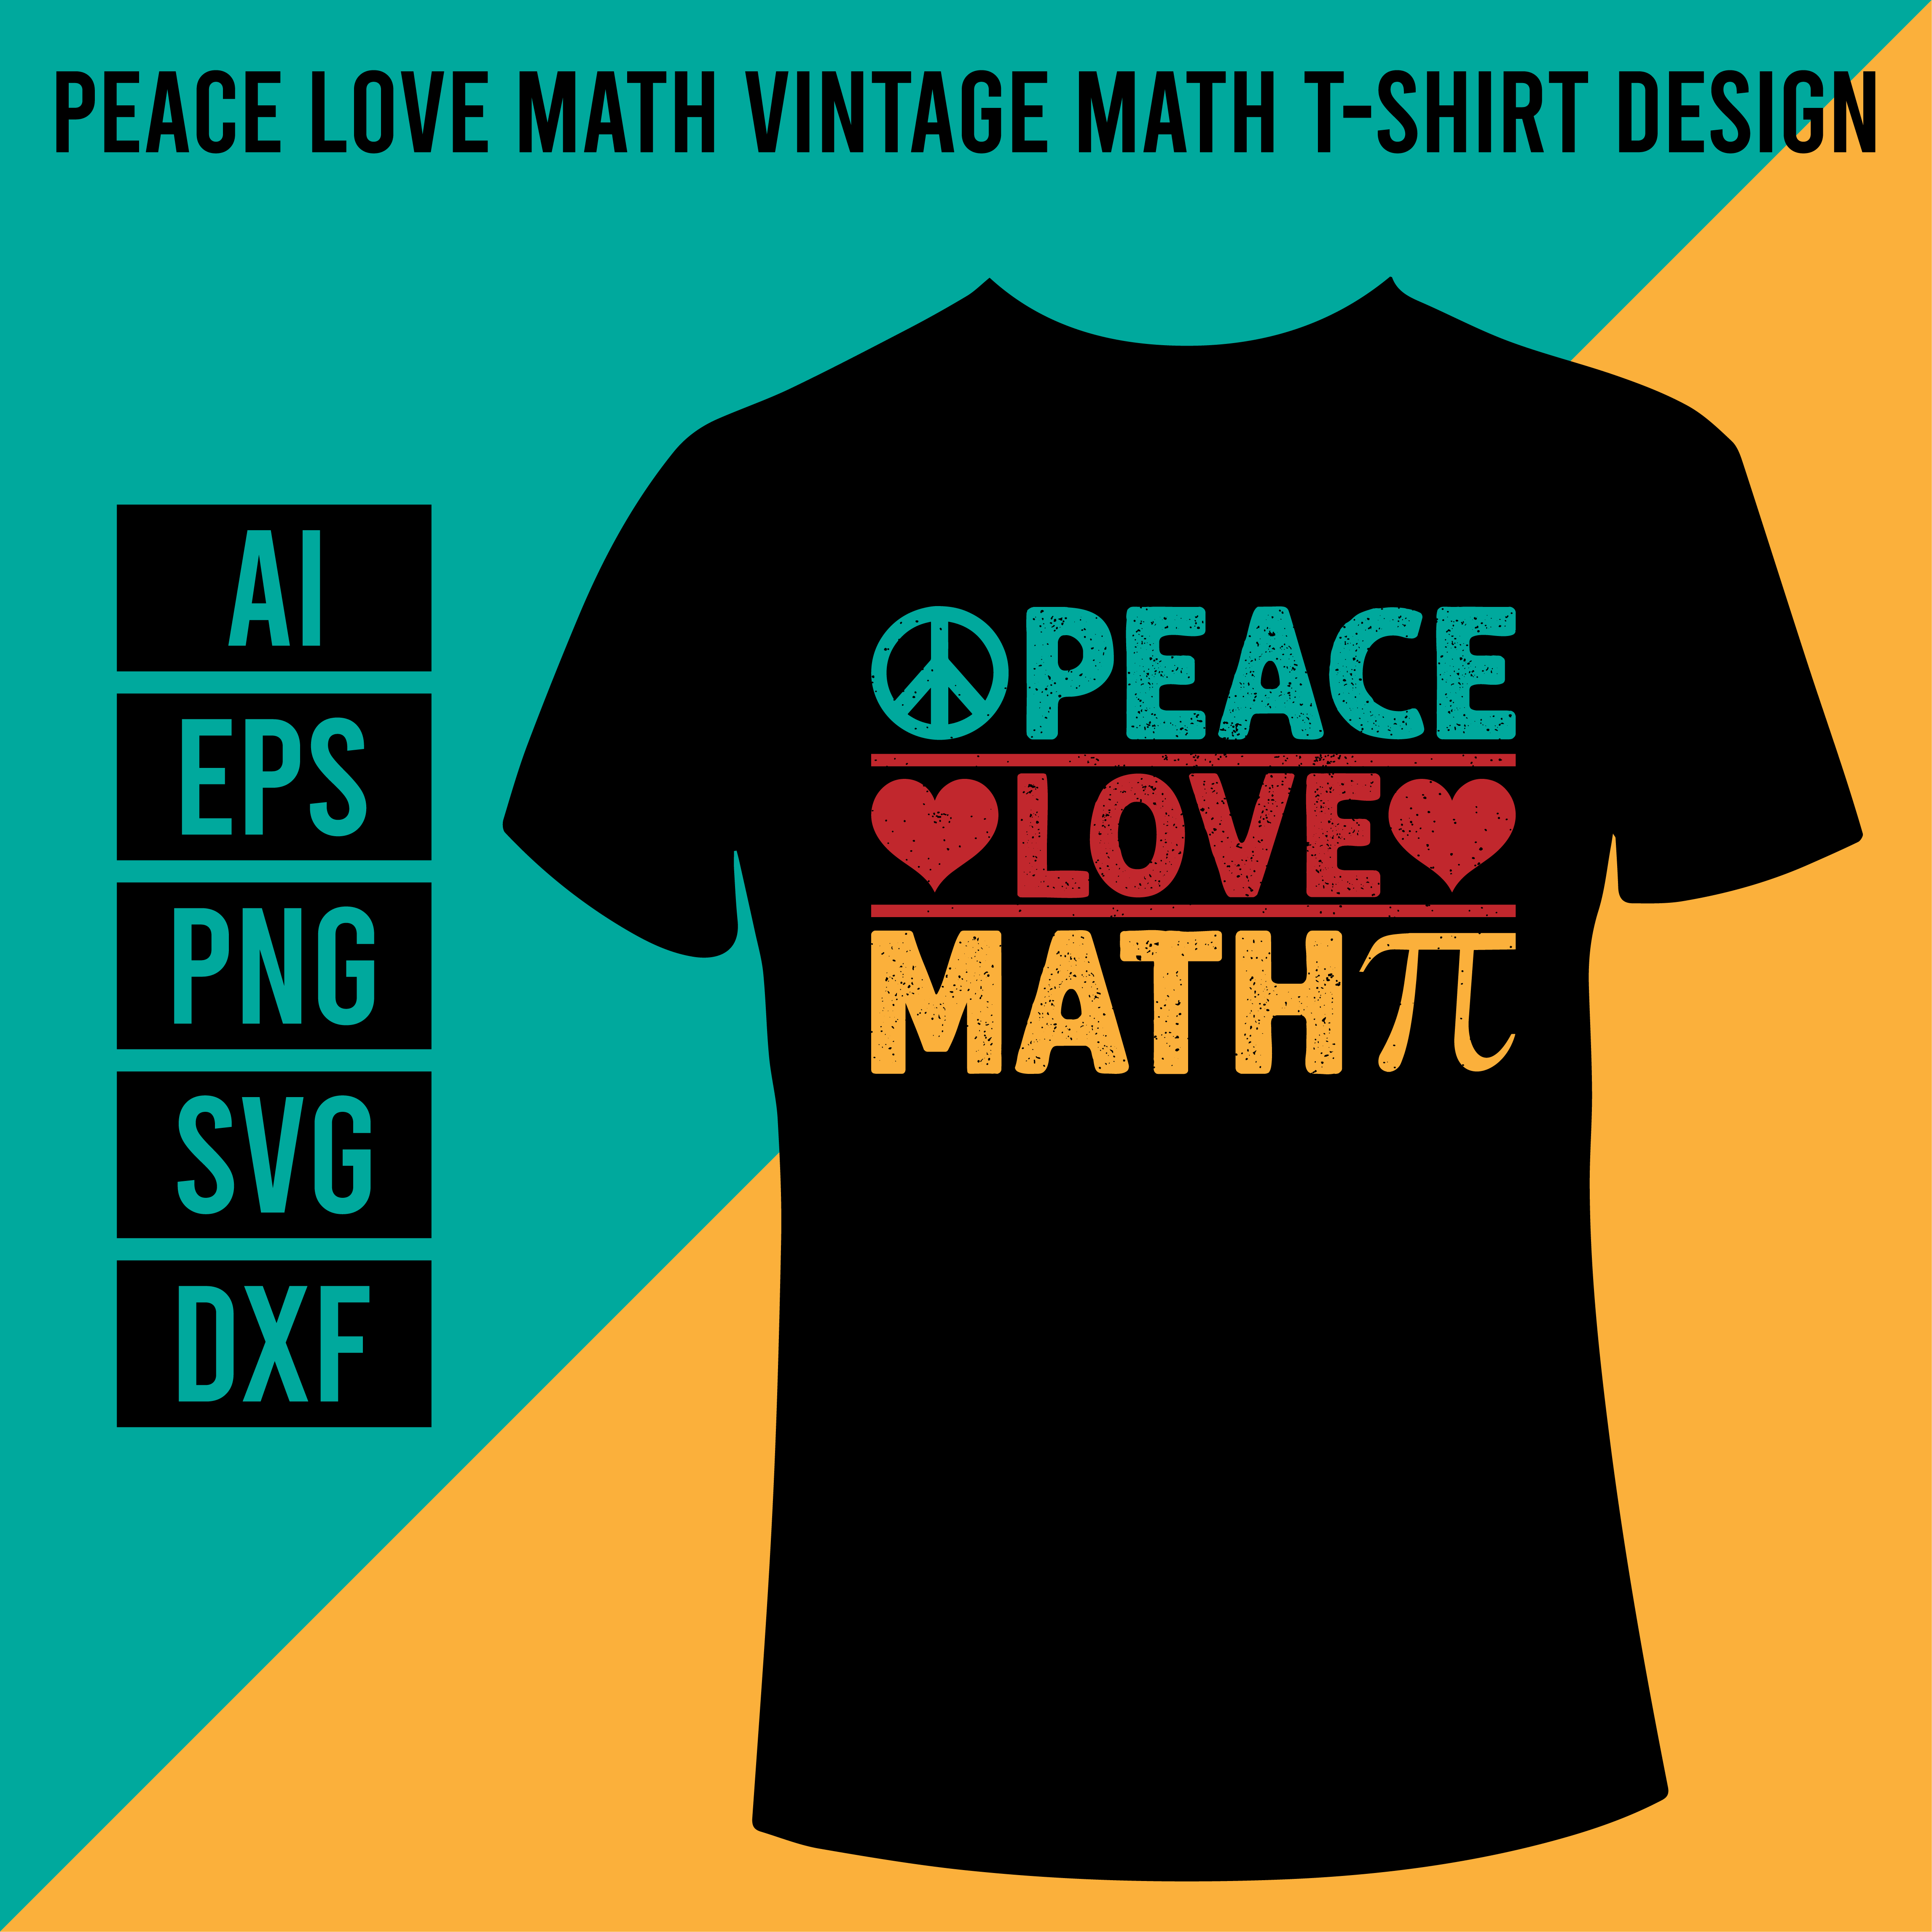 Peace Love Math Vintage Math T-Shirt Design main cover.